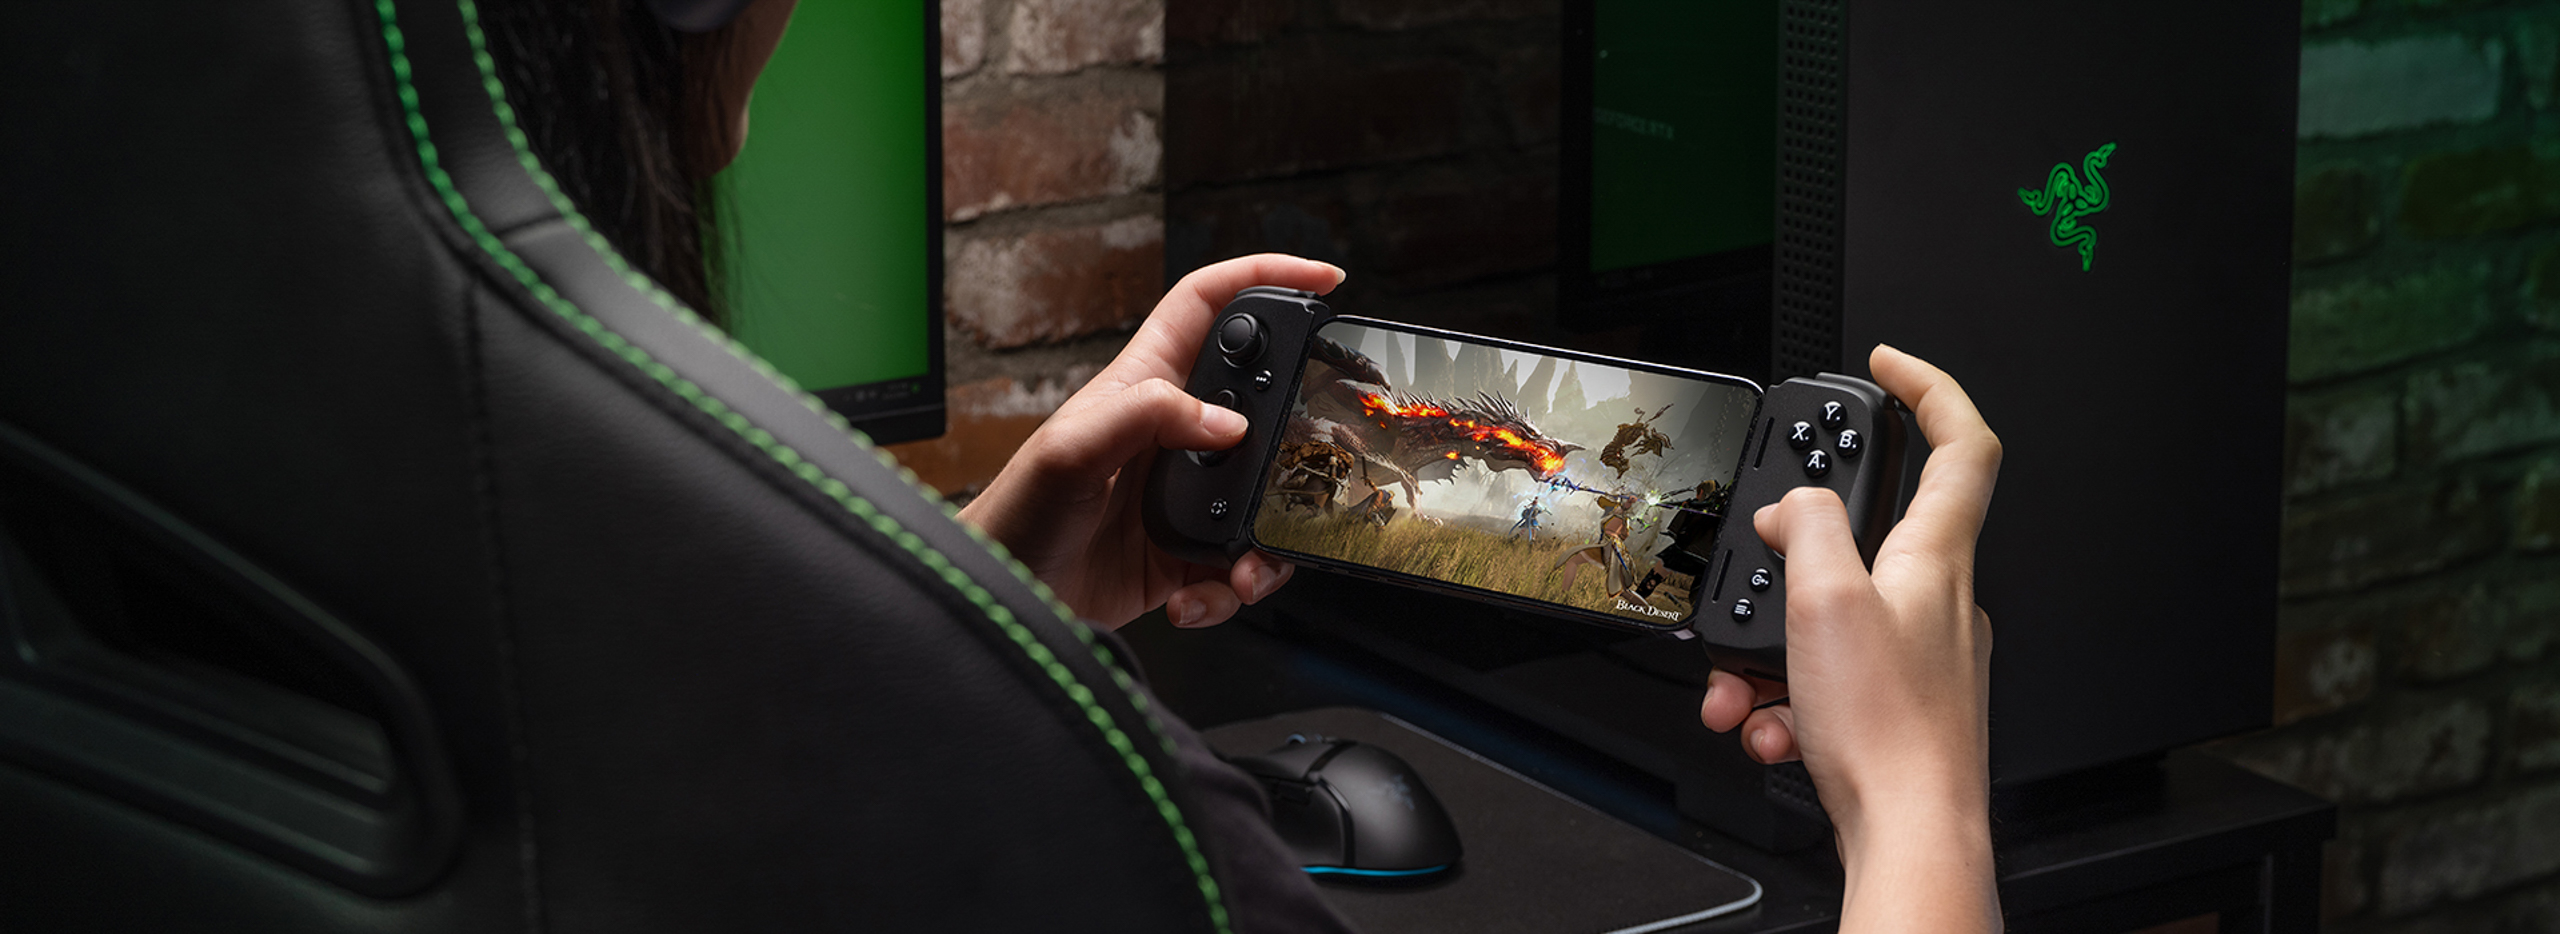 Razer Kishi V2 - tay cầm chơi game di động hoàn toàn mới cho iPhone và Android